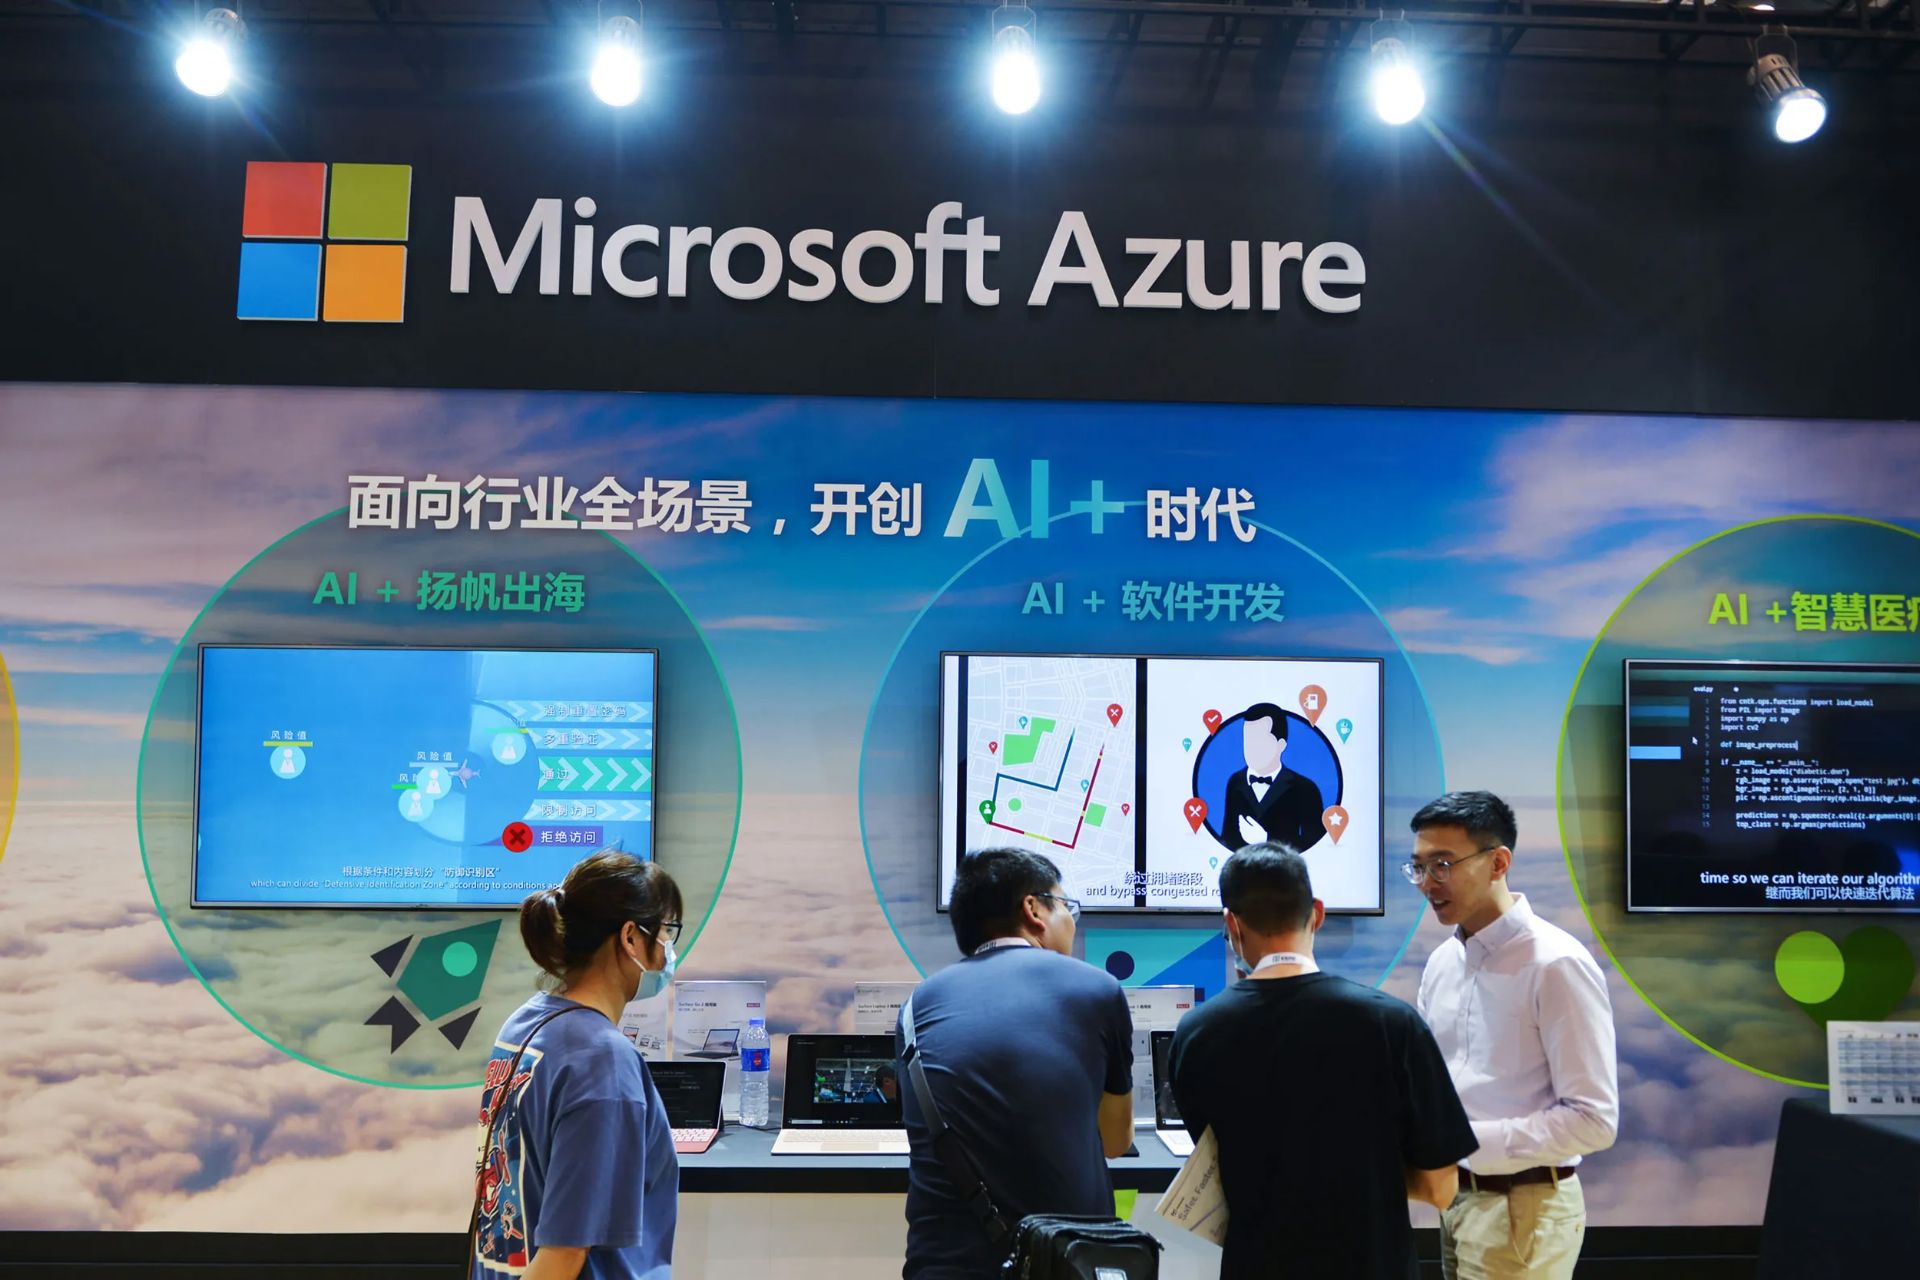 سرویس ابری مایکروسافت آژور / Microsoft Azure در فروشگاهی در چین